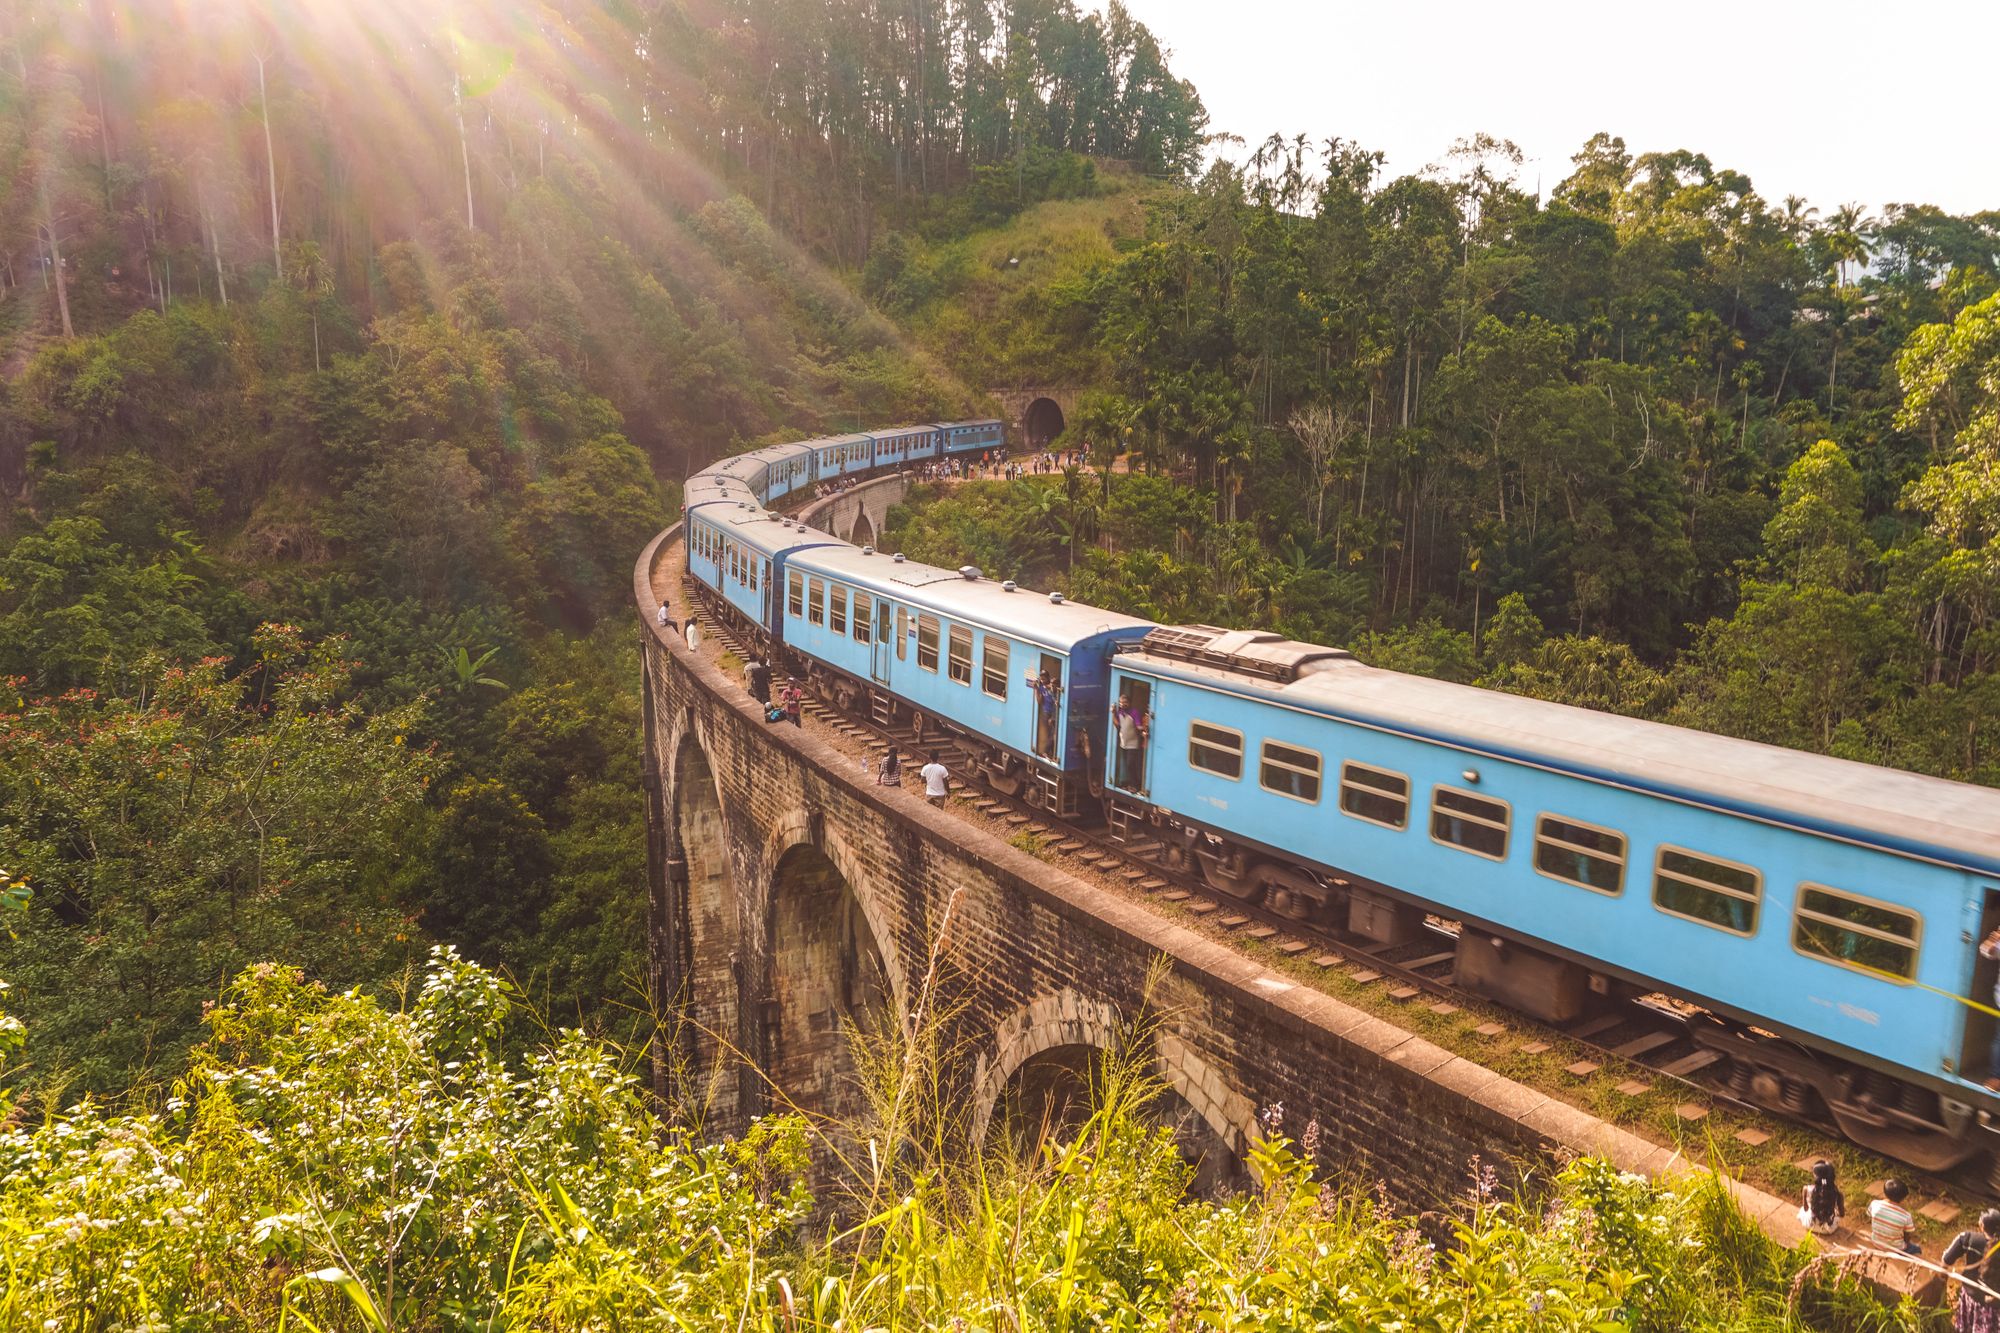 A train passing over the nine arch bridge in Ella, Sri Lanka